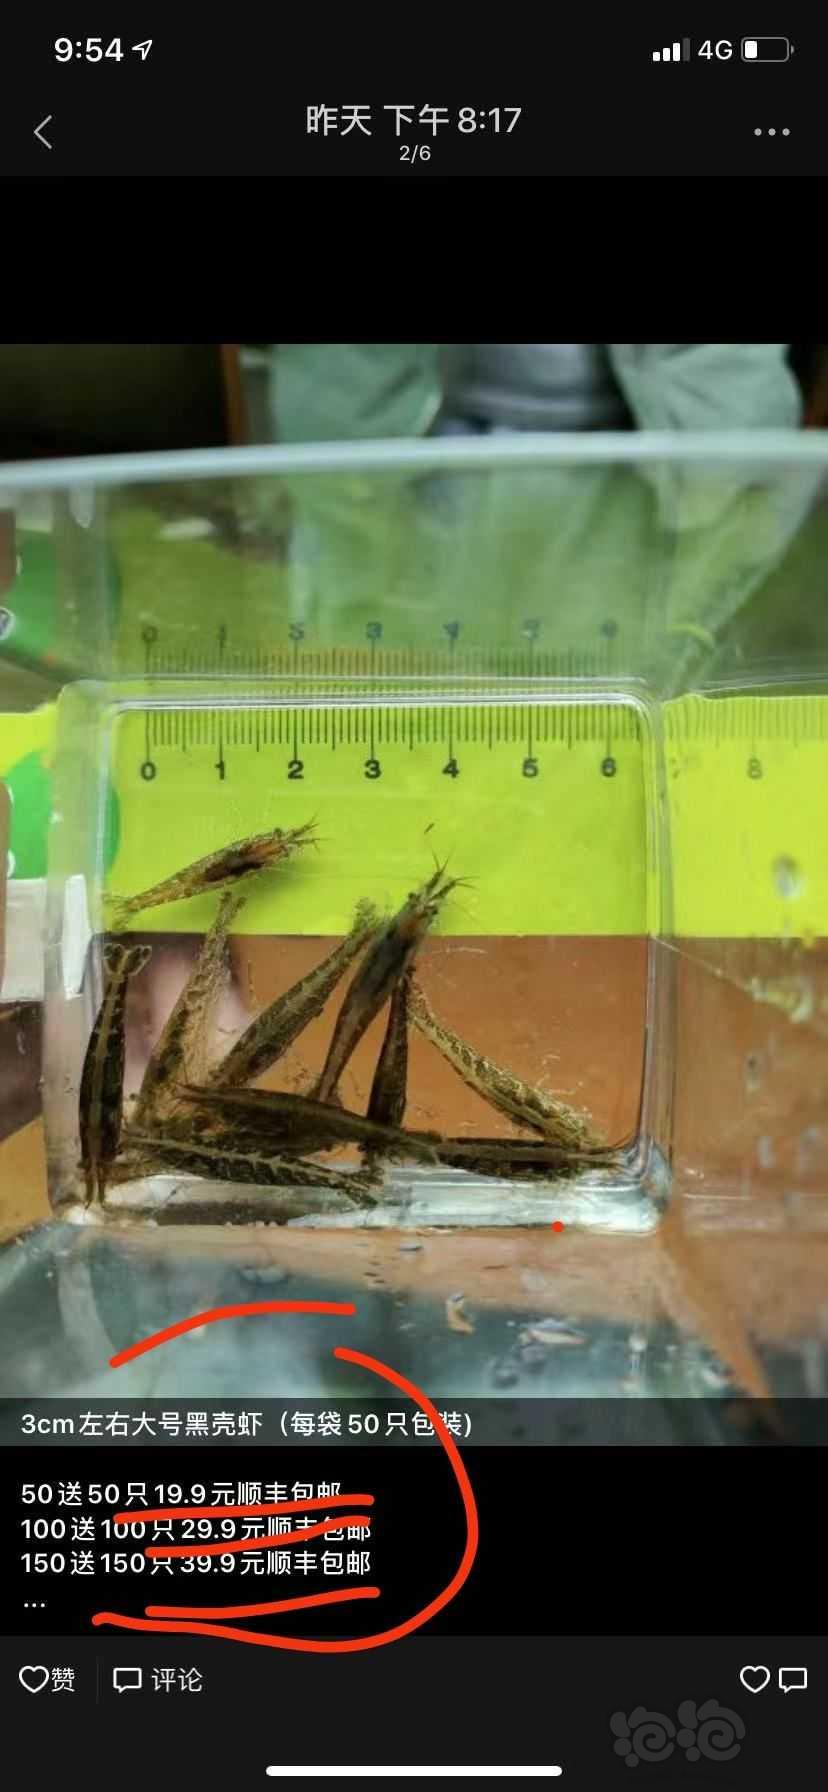 黑壳虾6.9元包邮半斤40元一斤70元水族用品福利价-图4